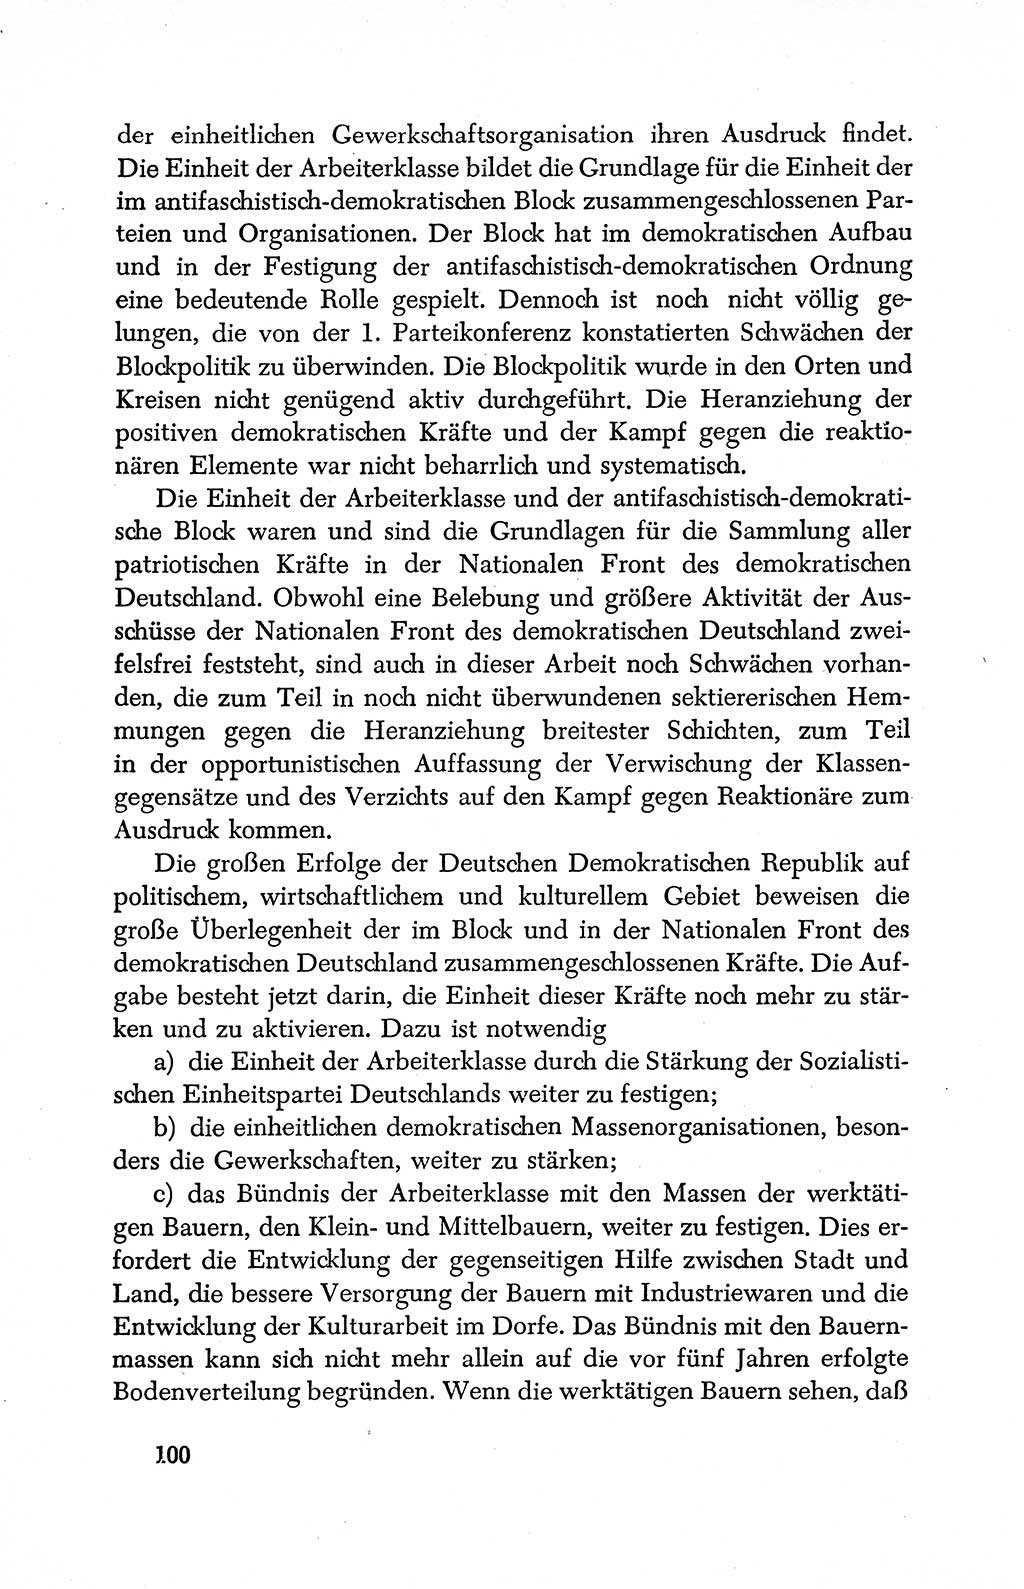 Dokumente der Sozialistischen Einheitspartei Deutschlands (SED) [Deutsche Demokratische Republik (DDR)] 1950-1952, Seite 100 (Dok. SED DDR 1950-1952, S. 100)